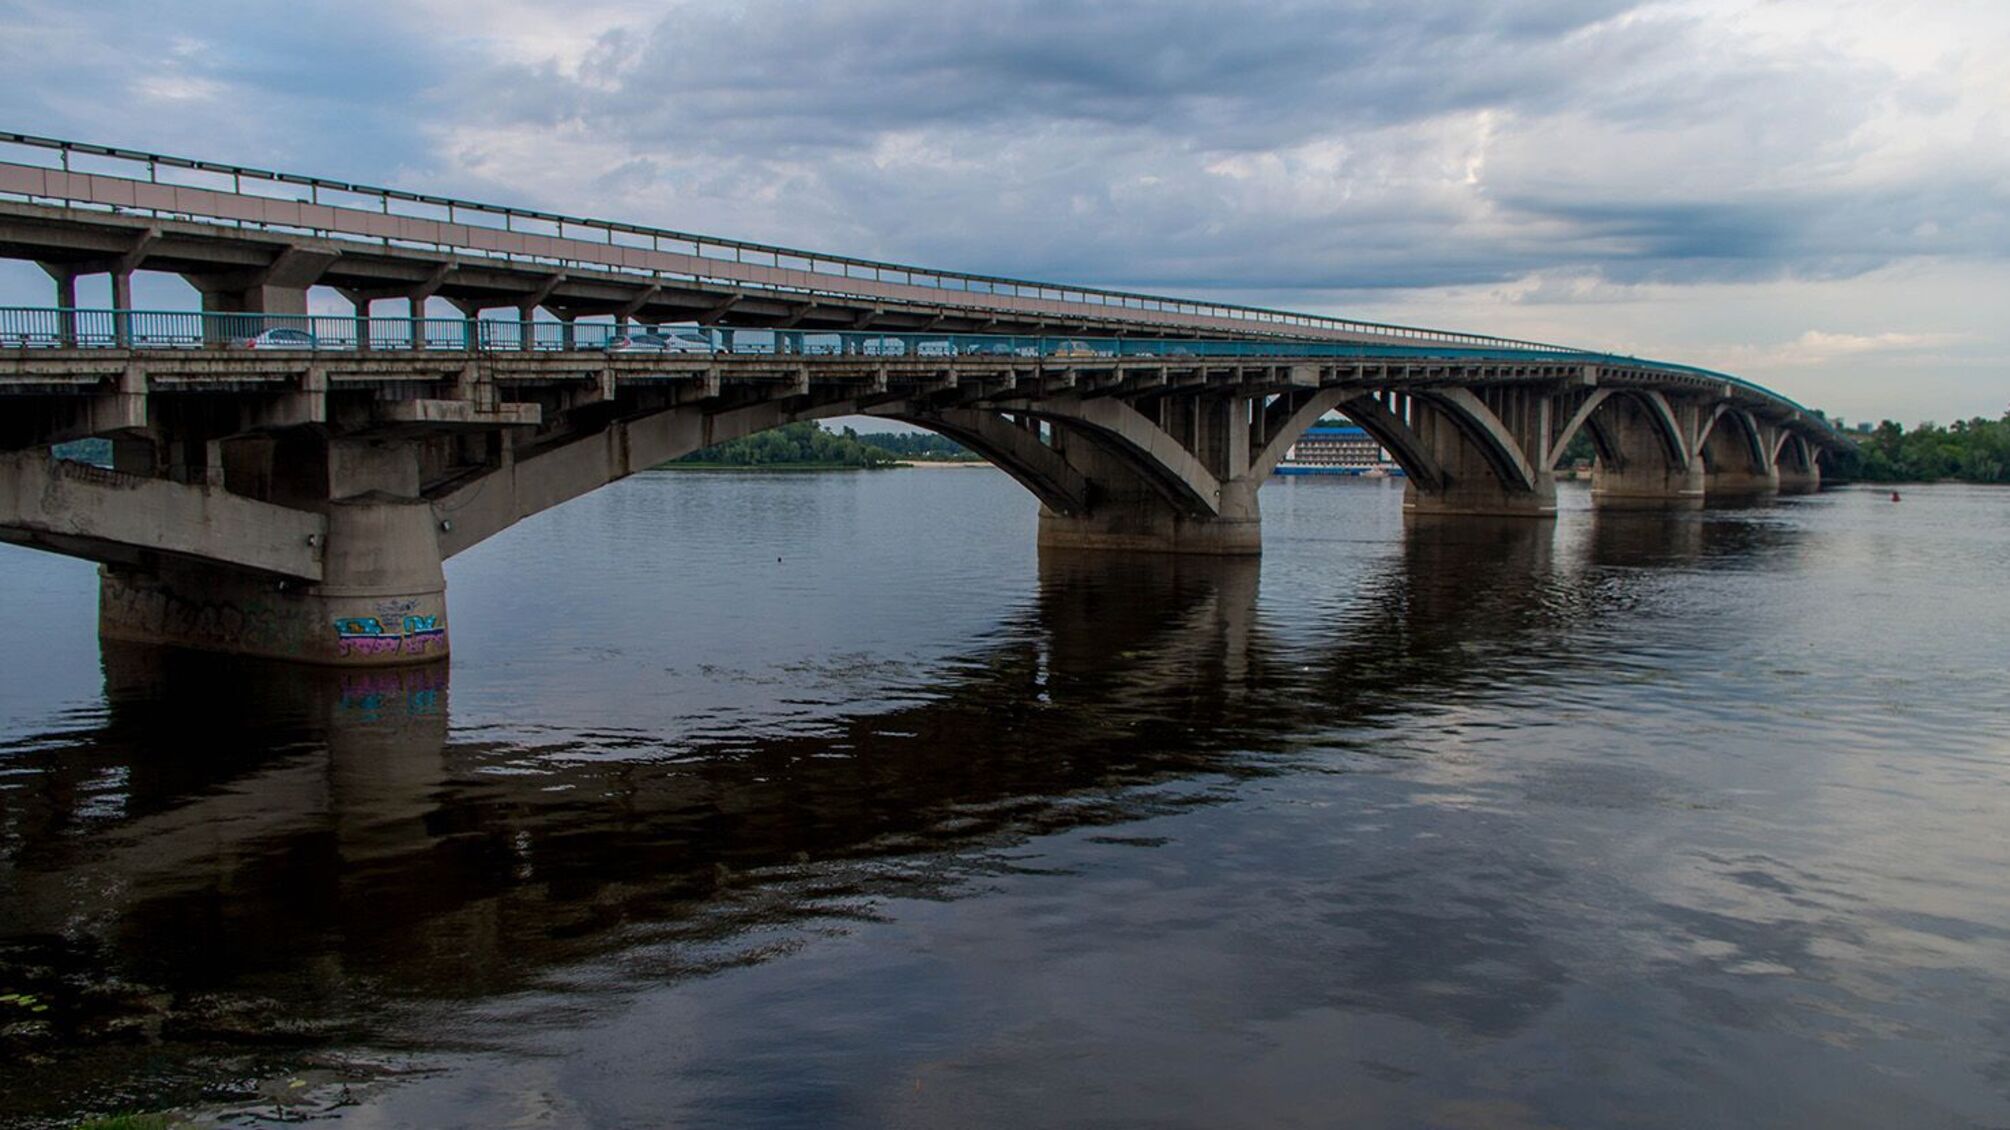 Експерти попереджають: 90% мостів у Києві є аварійними та можуть впасти